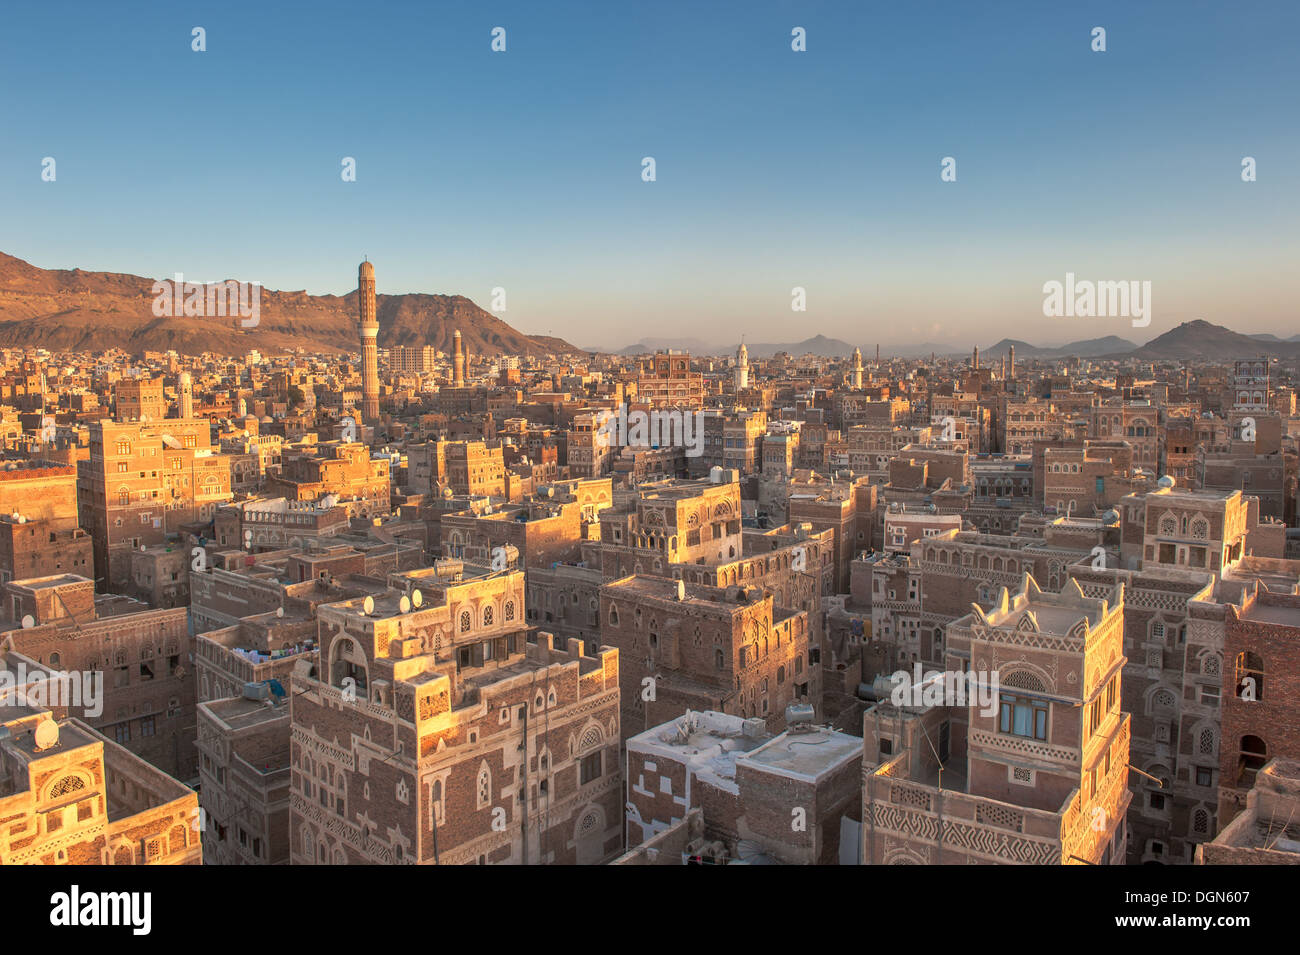 Panorama of Sanaa, Yemen Stock Photo